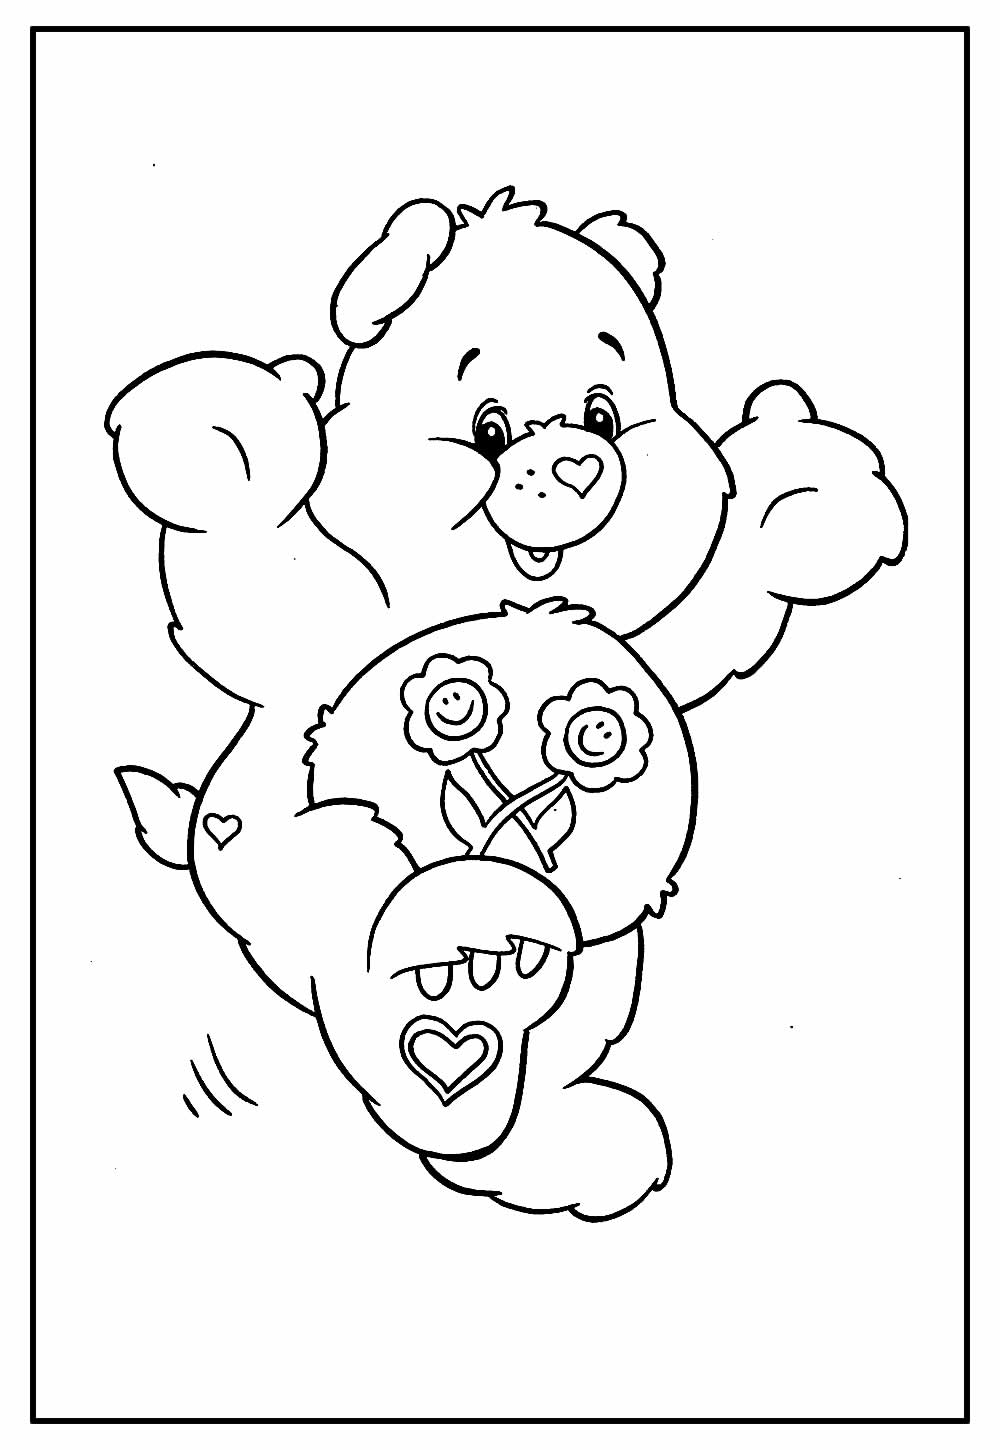 Desenho dos Ursinhos Carinhosos para imprimir e colorir